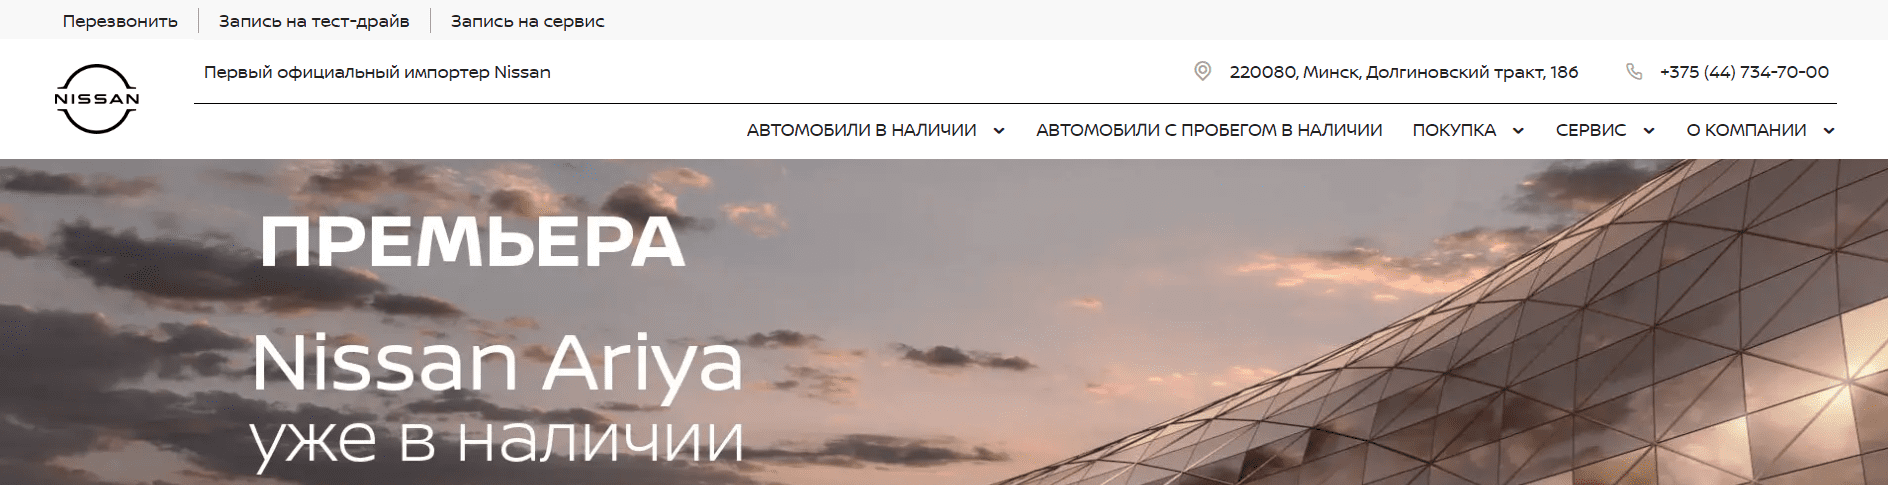 Автоцентр ДрайвМоторс (nissan-belarus.by) - официальный сайт